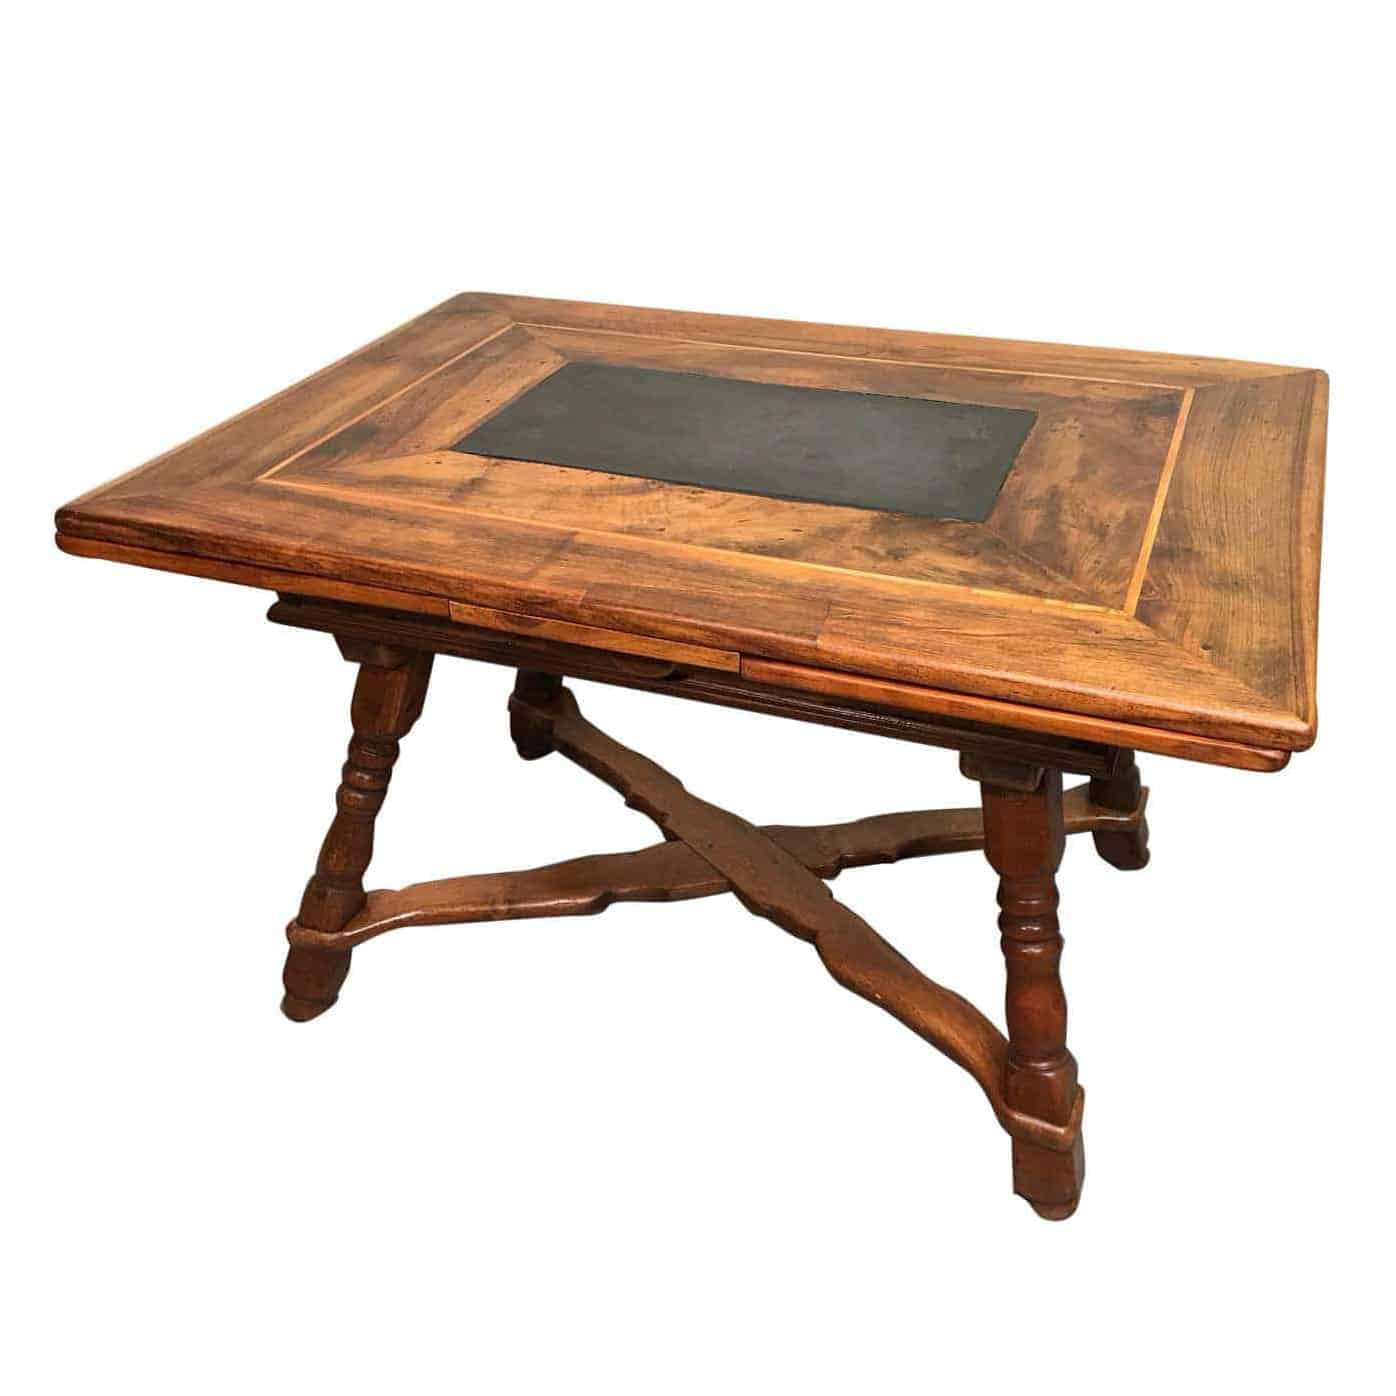 18th century Farm Table- styylish